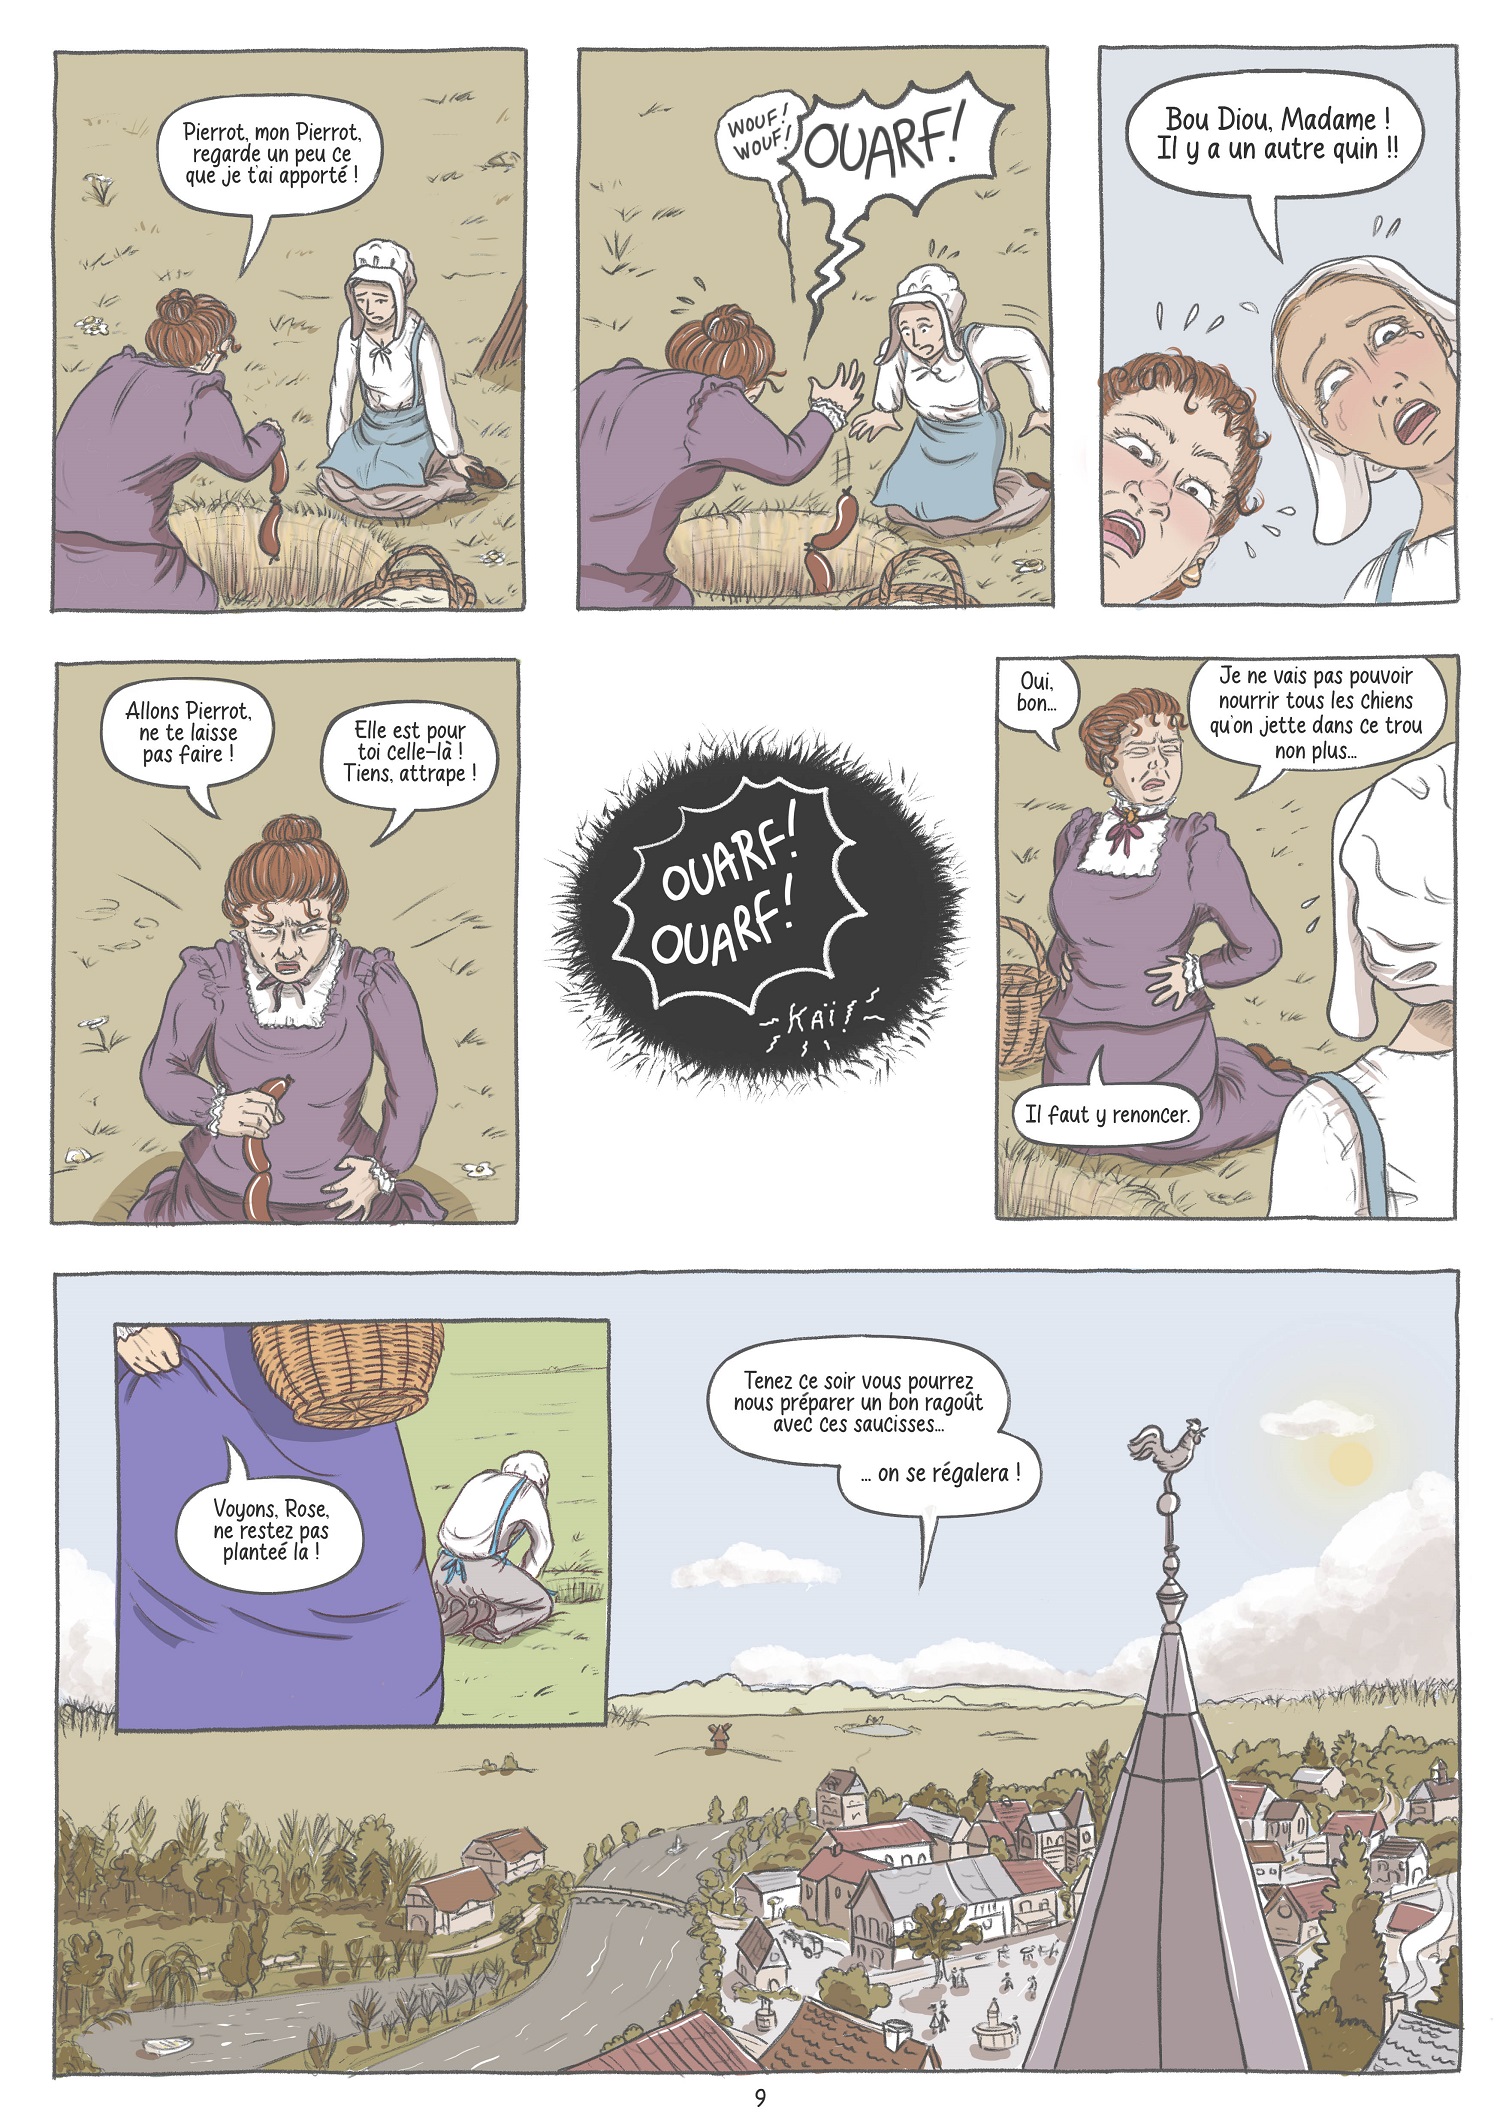 Pierrot Page 9 - Nouvelle de Maupassant